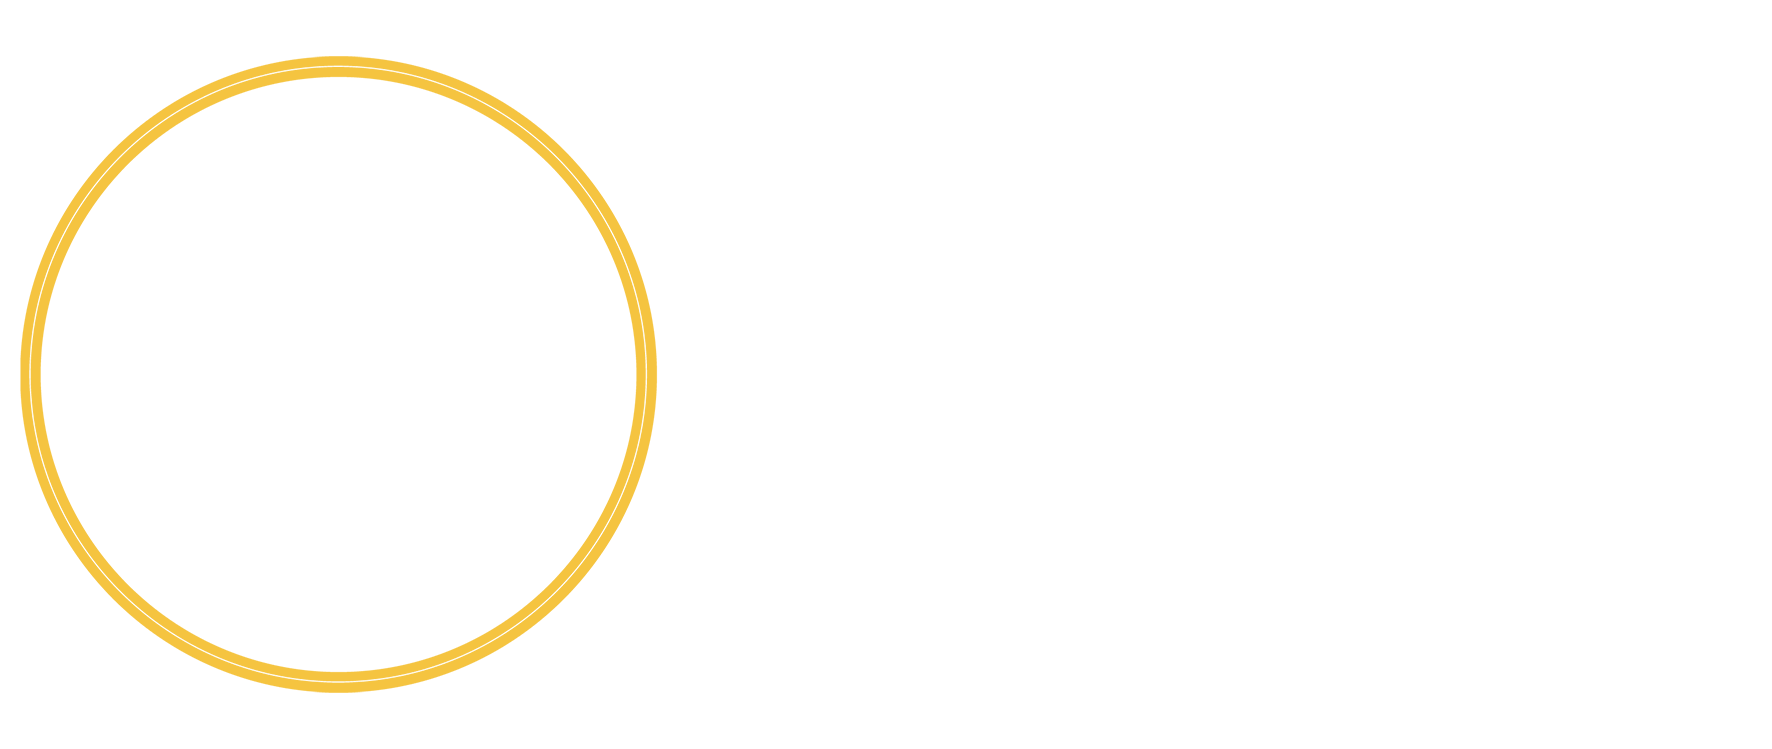 Engage Logos-02 no blend white